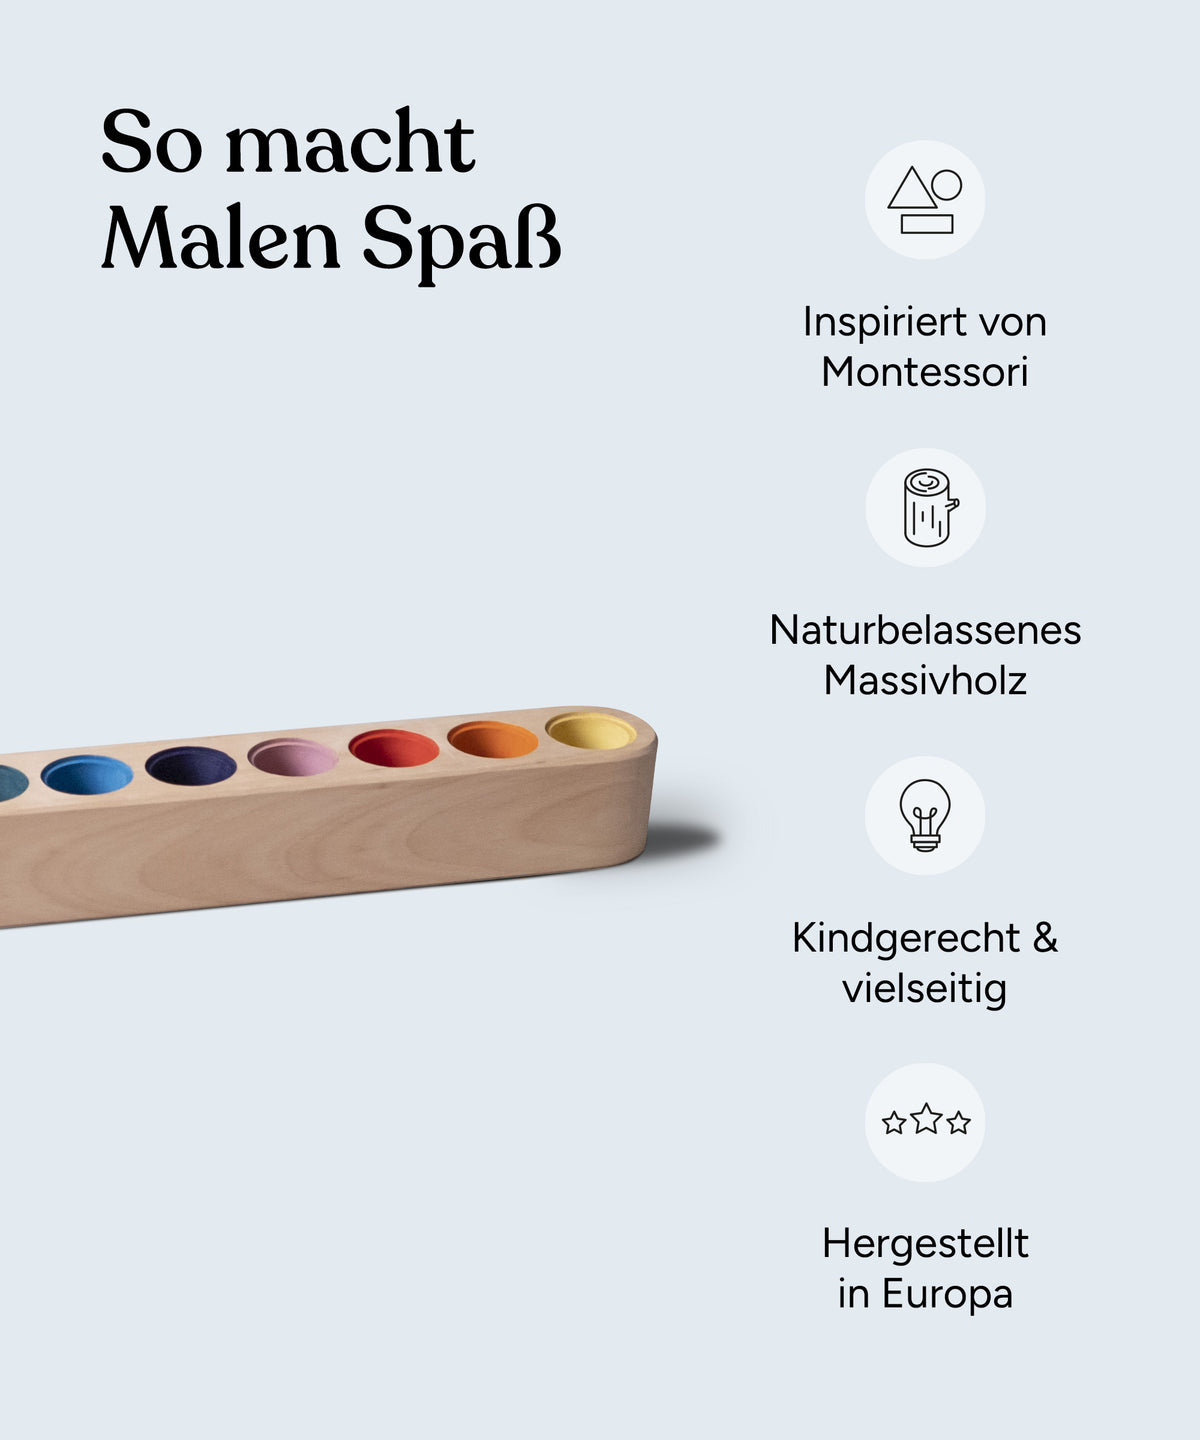 Vorteile Stiftehalter: Inspiriert von Montessori, naturbelassenes Massivholz, kindgerecht und vielseitig, hergestellt in Europa.